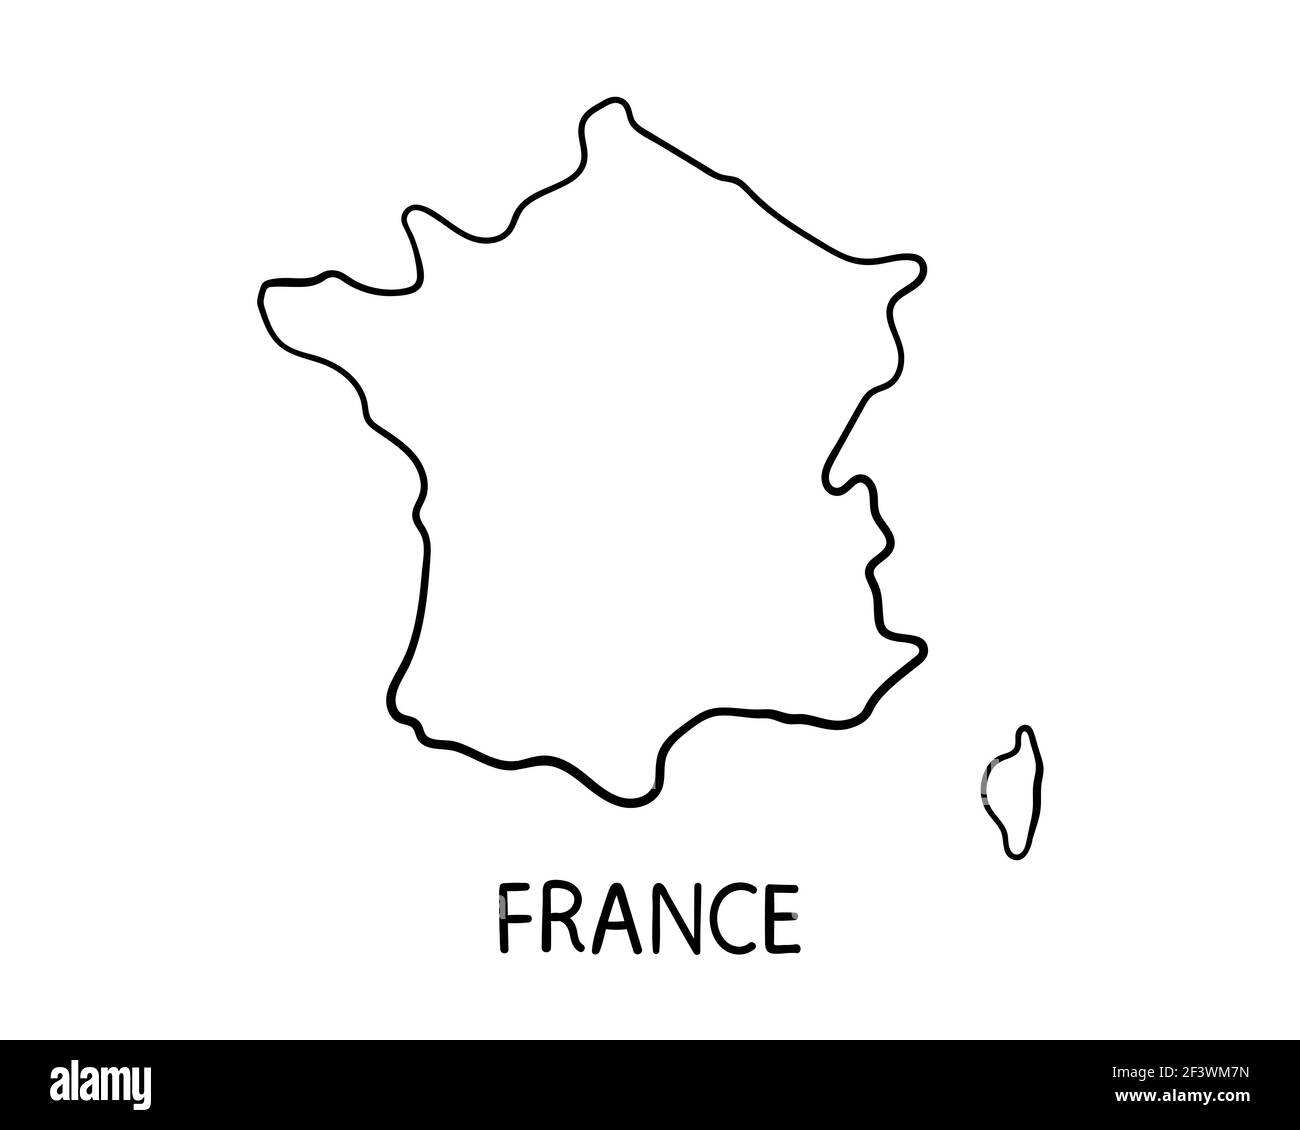 Dibujo a mano de Francia ilustración del mapa Foto de stock